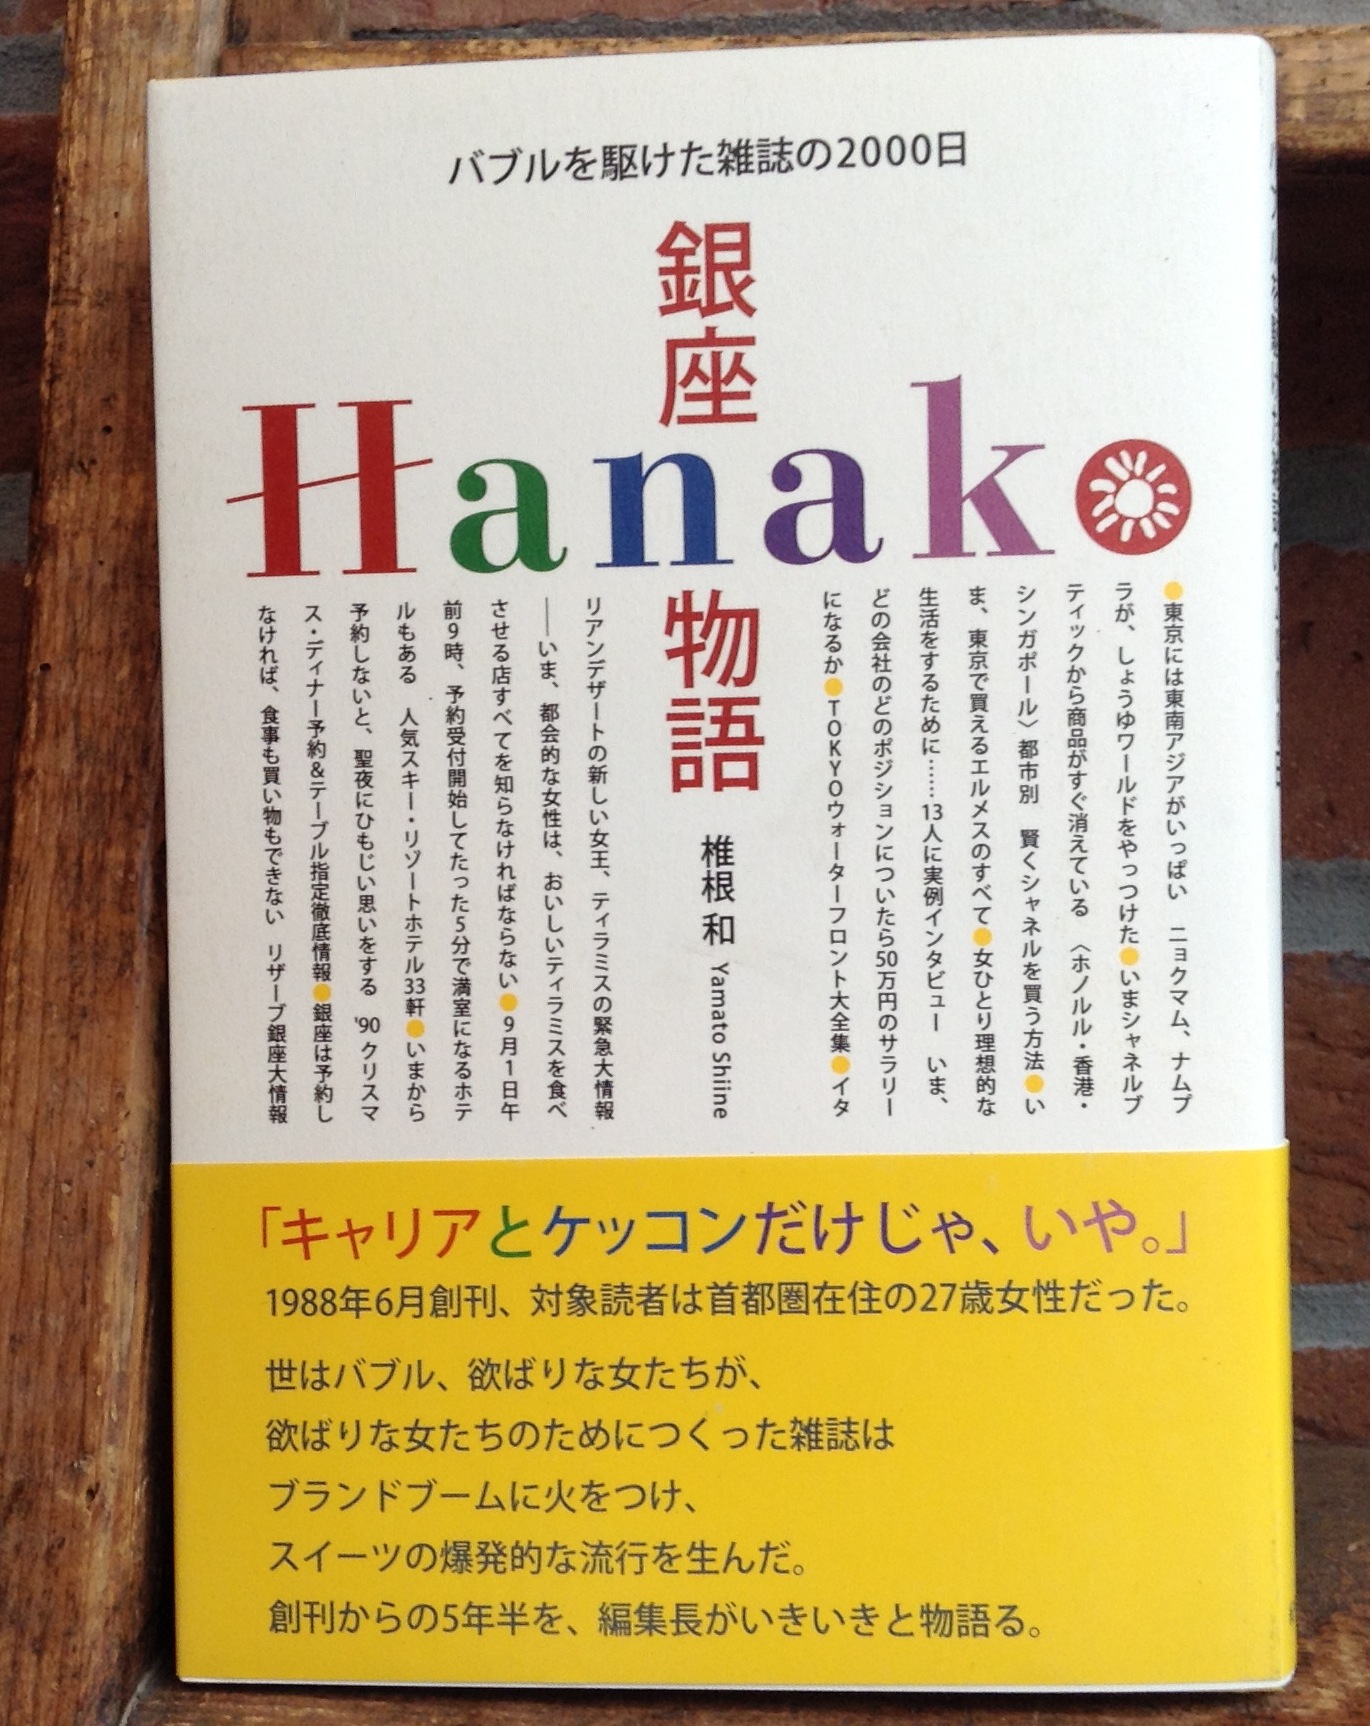 『銀座Hanako物語』（紀伊國屋書店）刊行記念 椎根 和 × 高橋靖子トークイベント 「あのころの話をしよう」